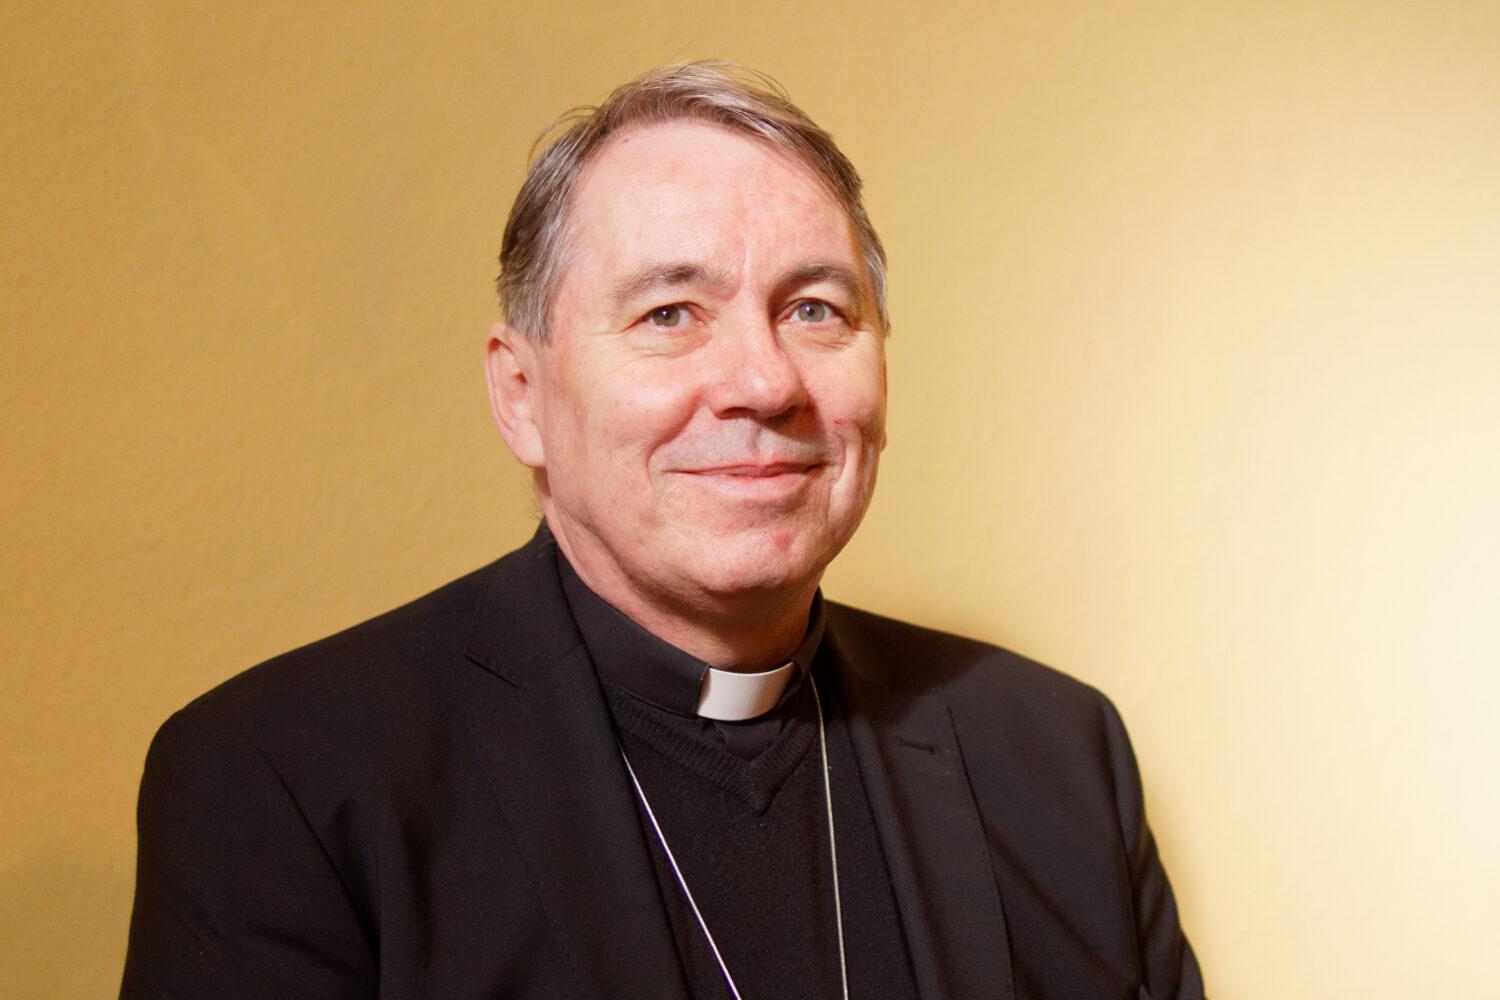 Otec biskup Ján Kuboš: Veľká noc je víťazstvo bez zloby a bez zbraní